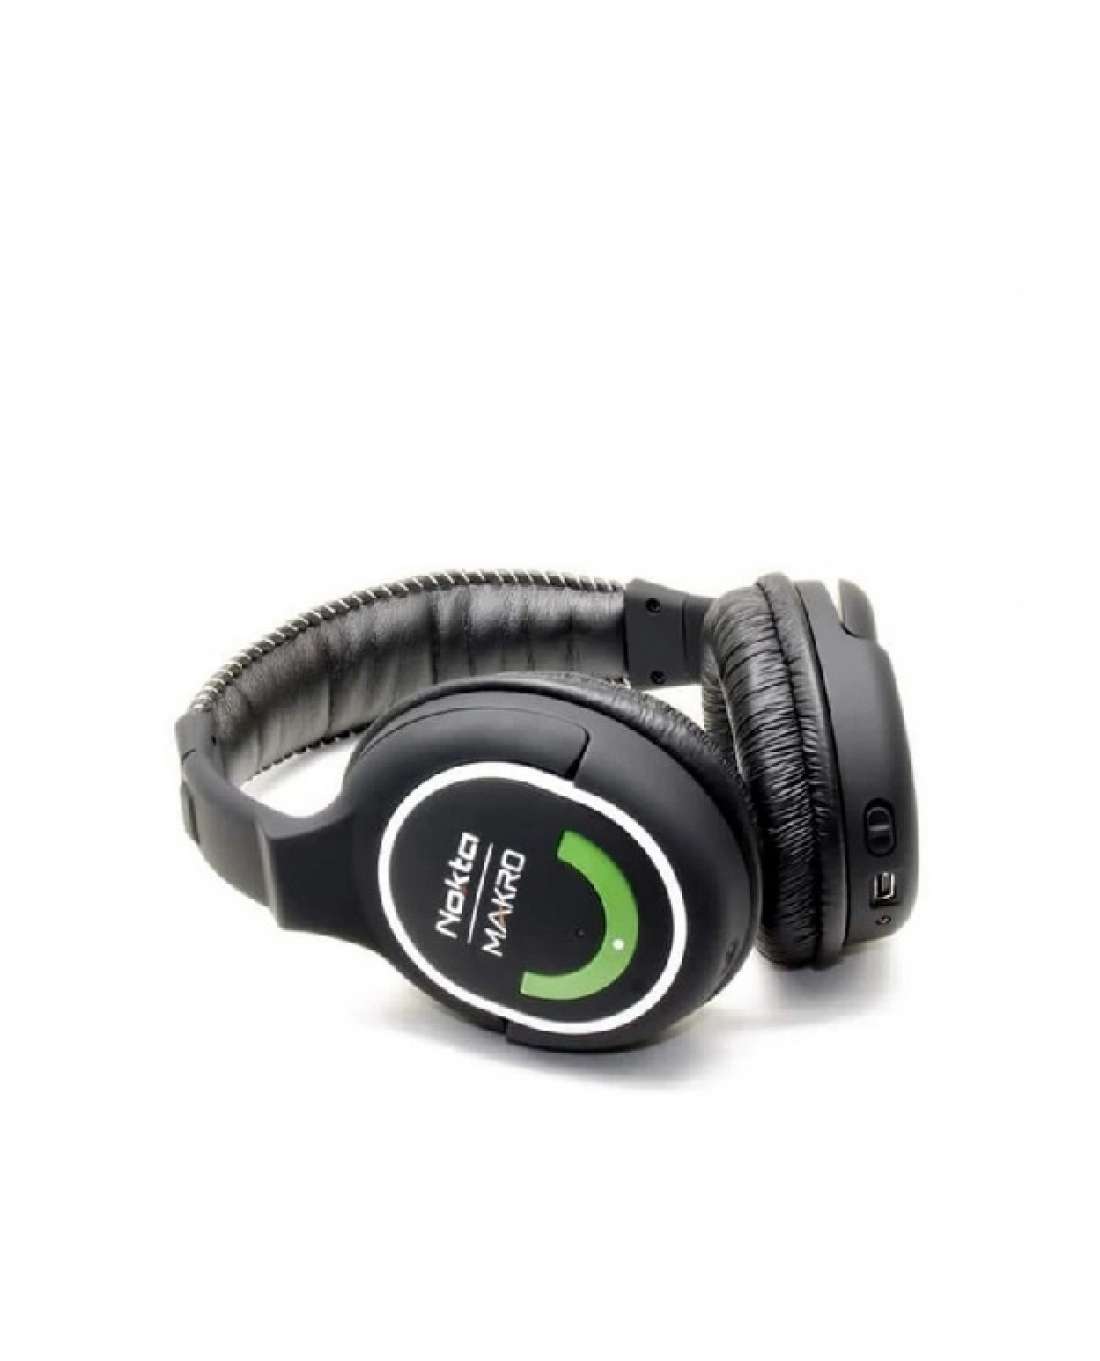 Nokta Makro Green Edition 2,4 GHz -kuulokkeet, langaton